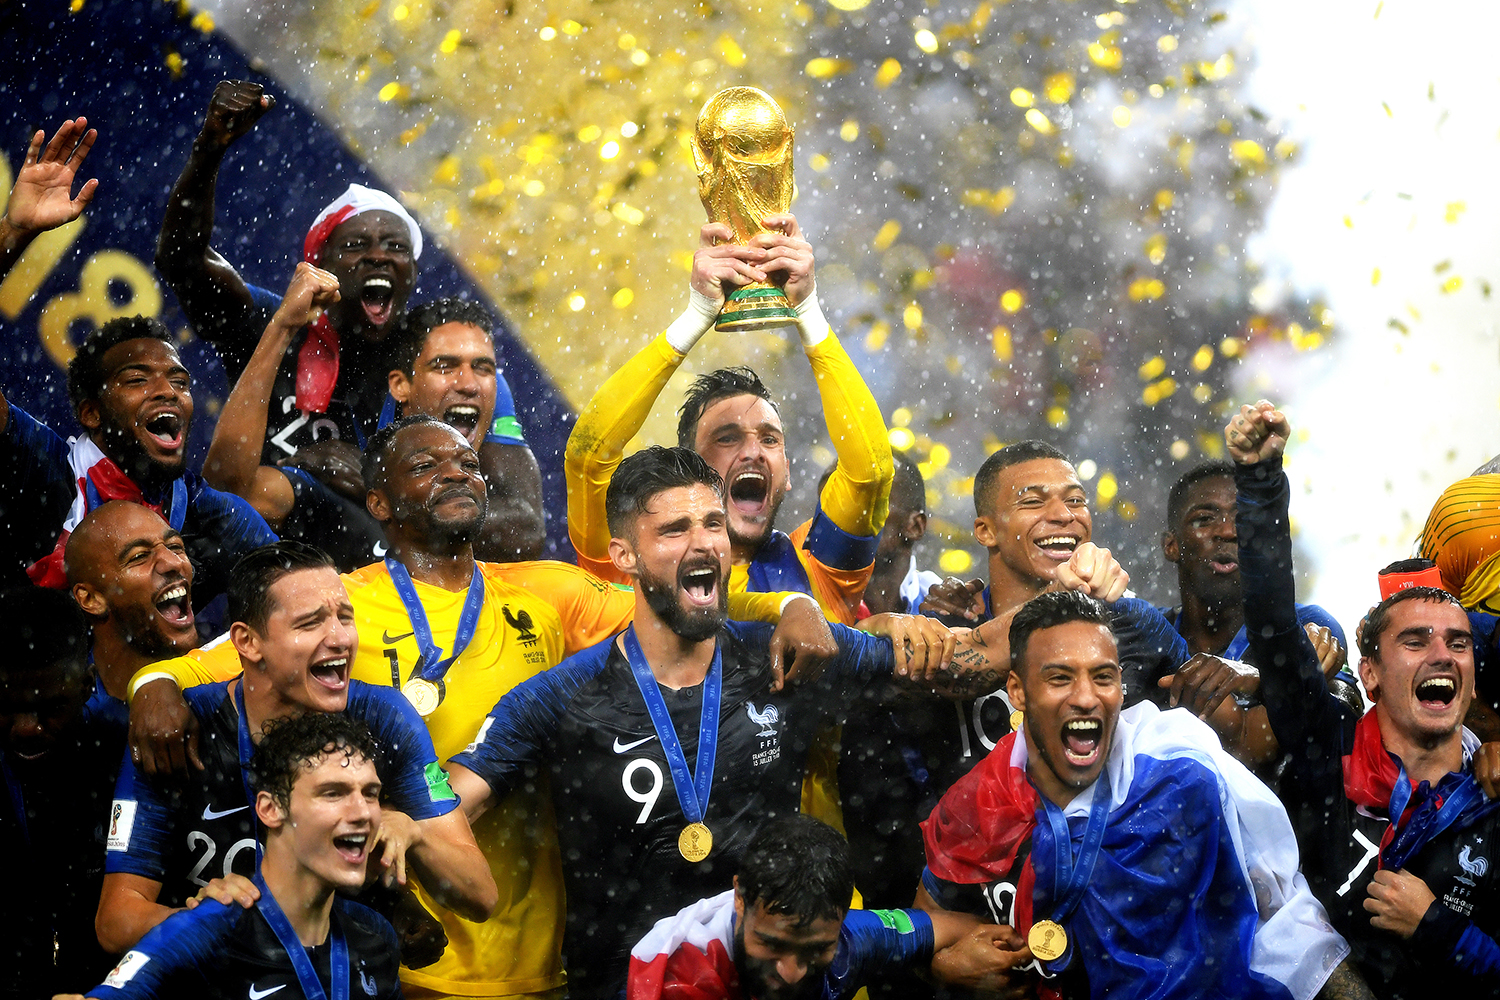 A Copa de 2018 em imagens - Placar - O futebol sem barreiras para você